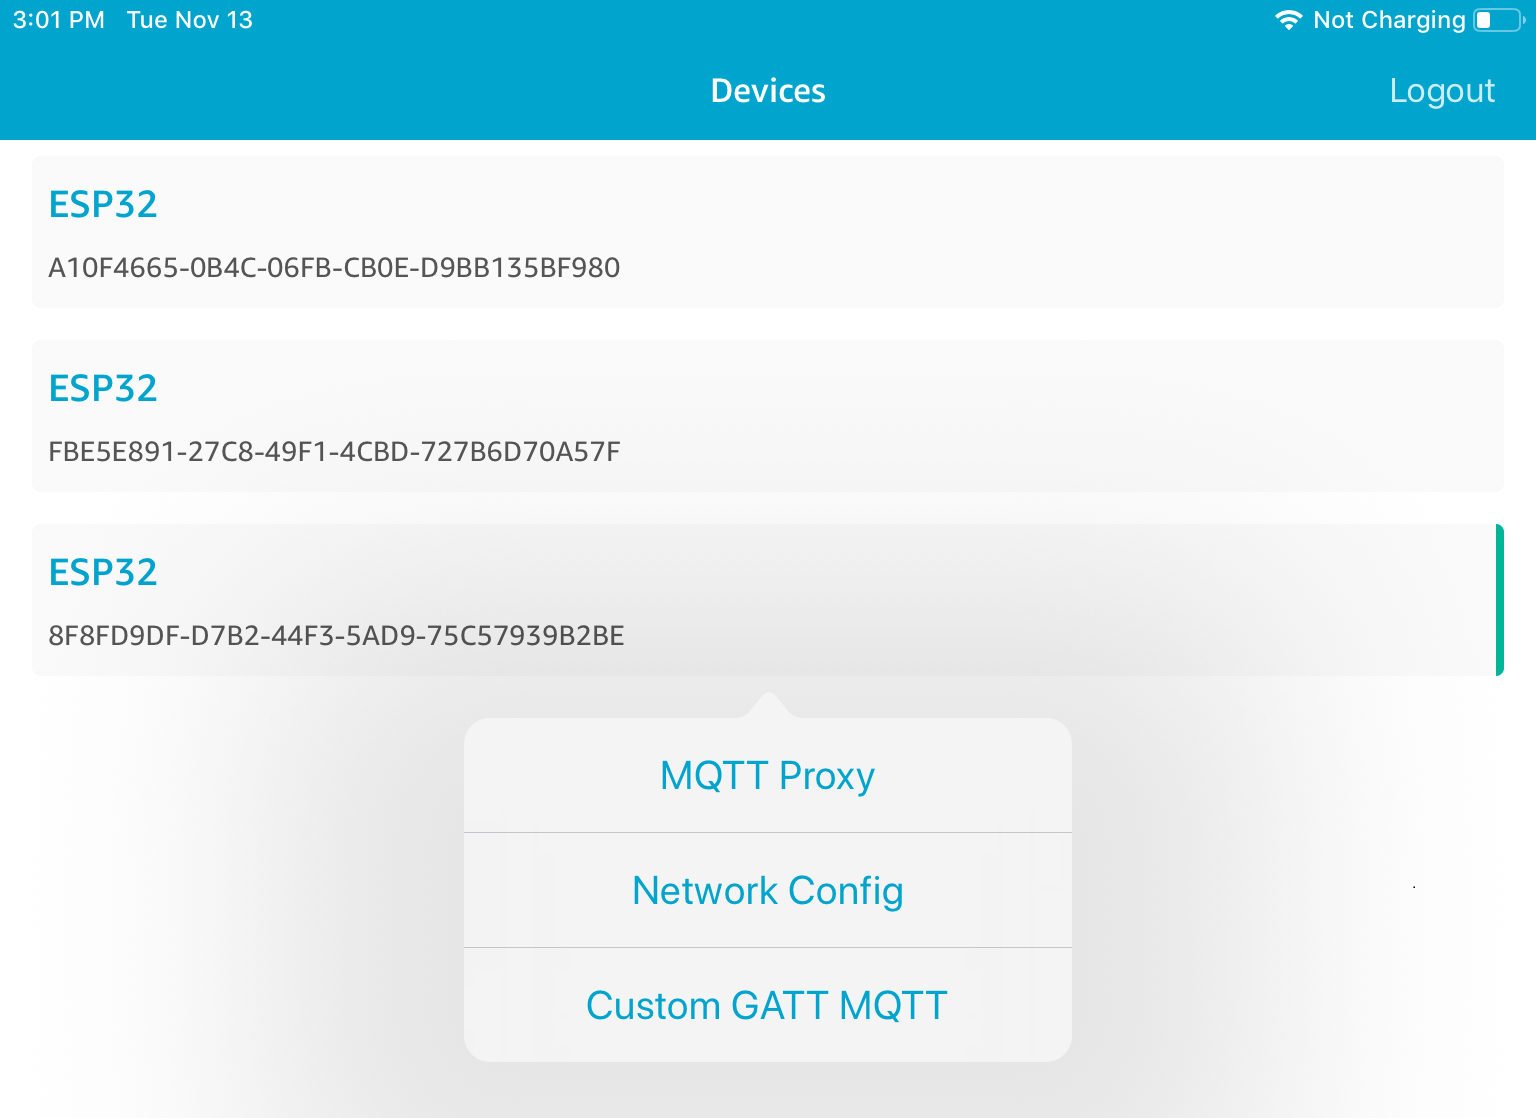 Lista de tres ID de dispositivos ESP32, con las opciones MQTT Proxy, Network Config y Custom GATT MQTT a continuación.